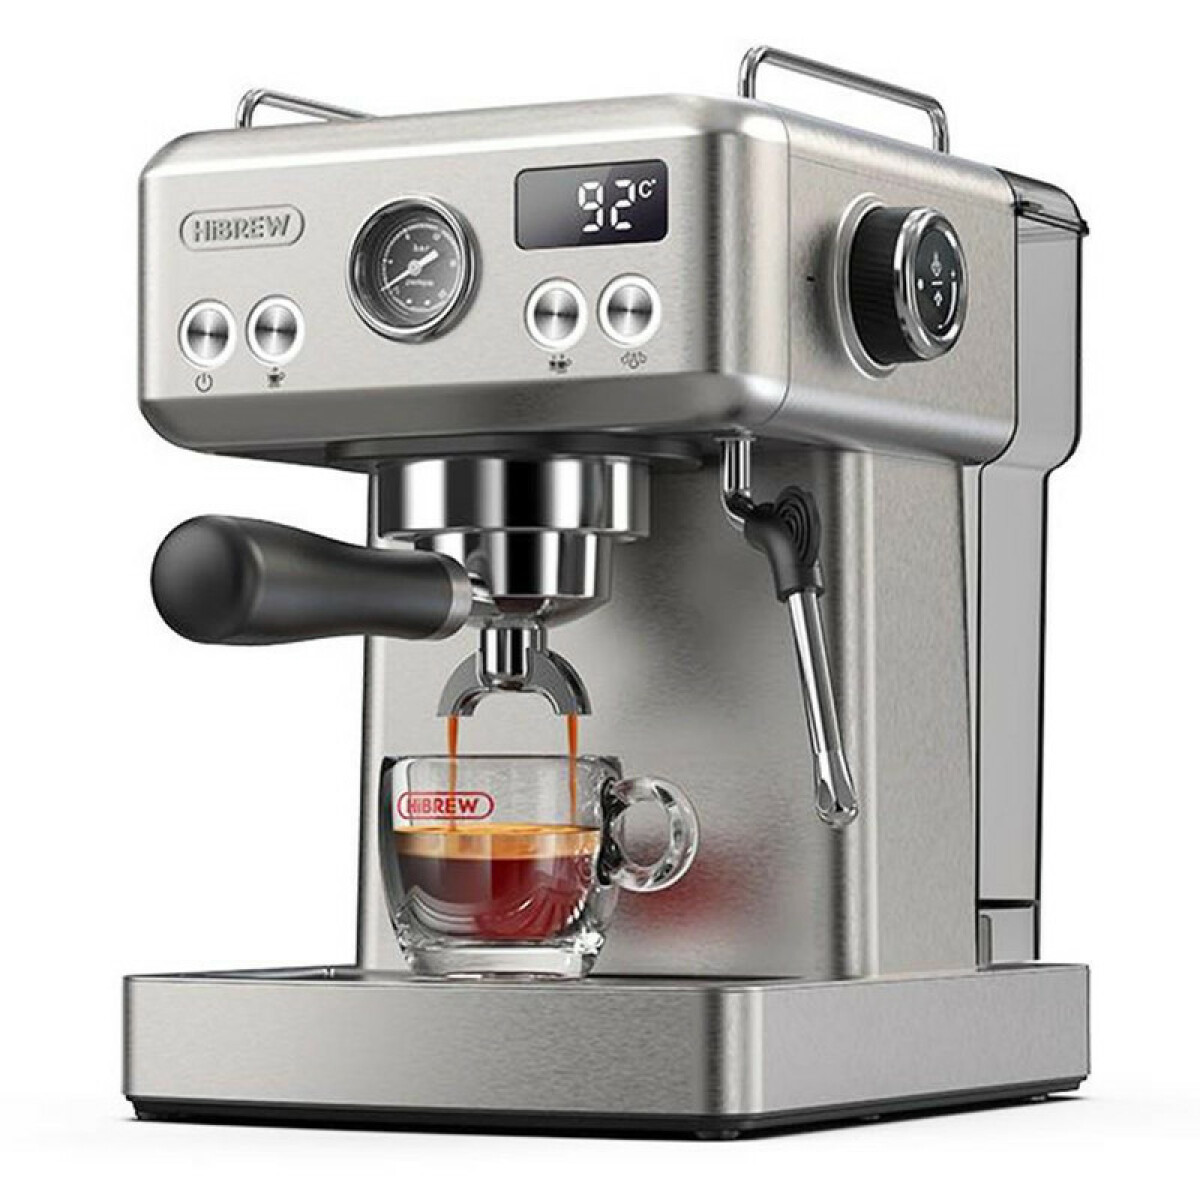 HiBREW H10A Machine à café expresso semi-automatique 19 bars, cafetière froide/chaude